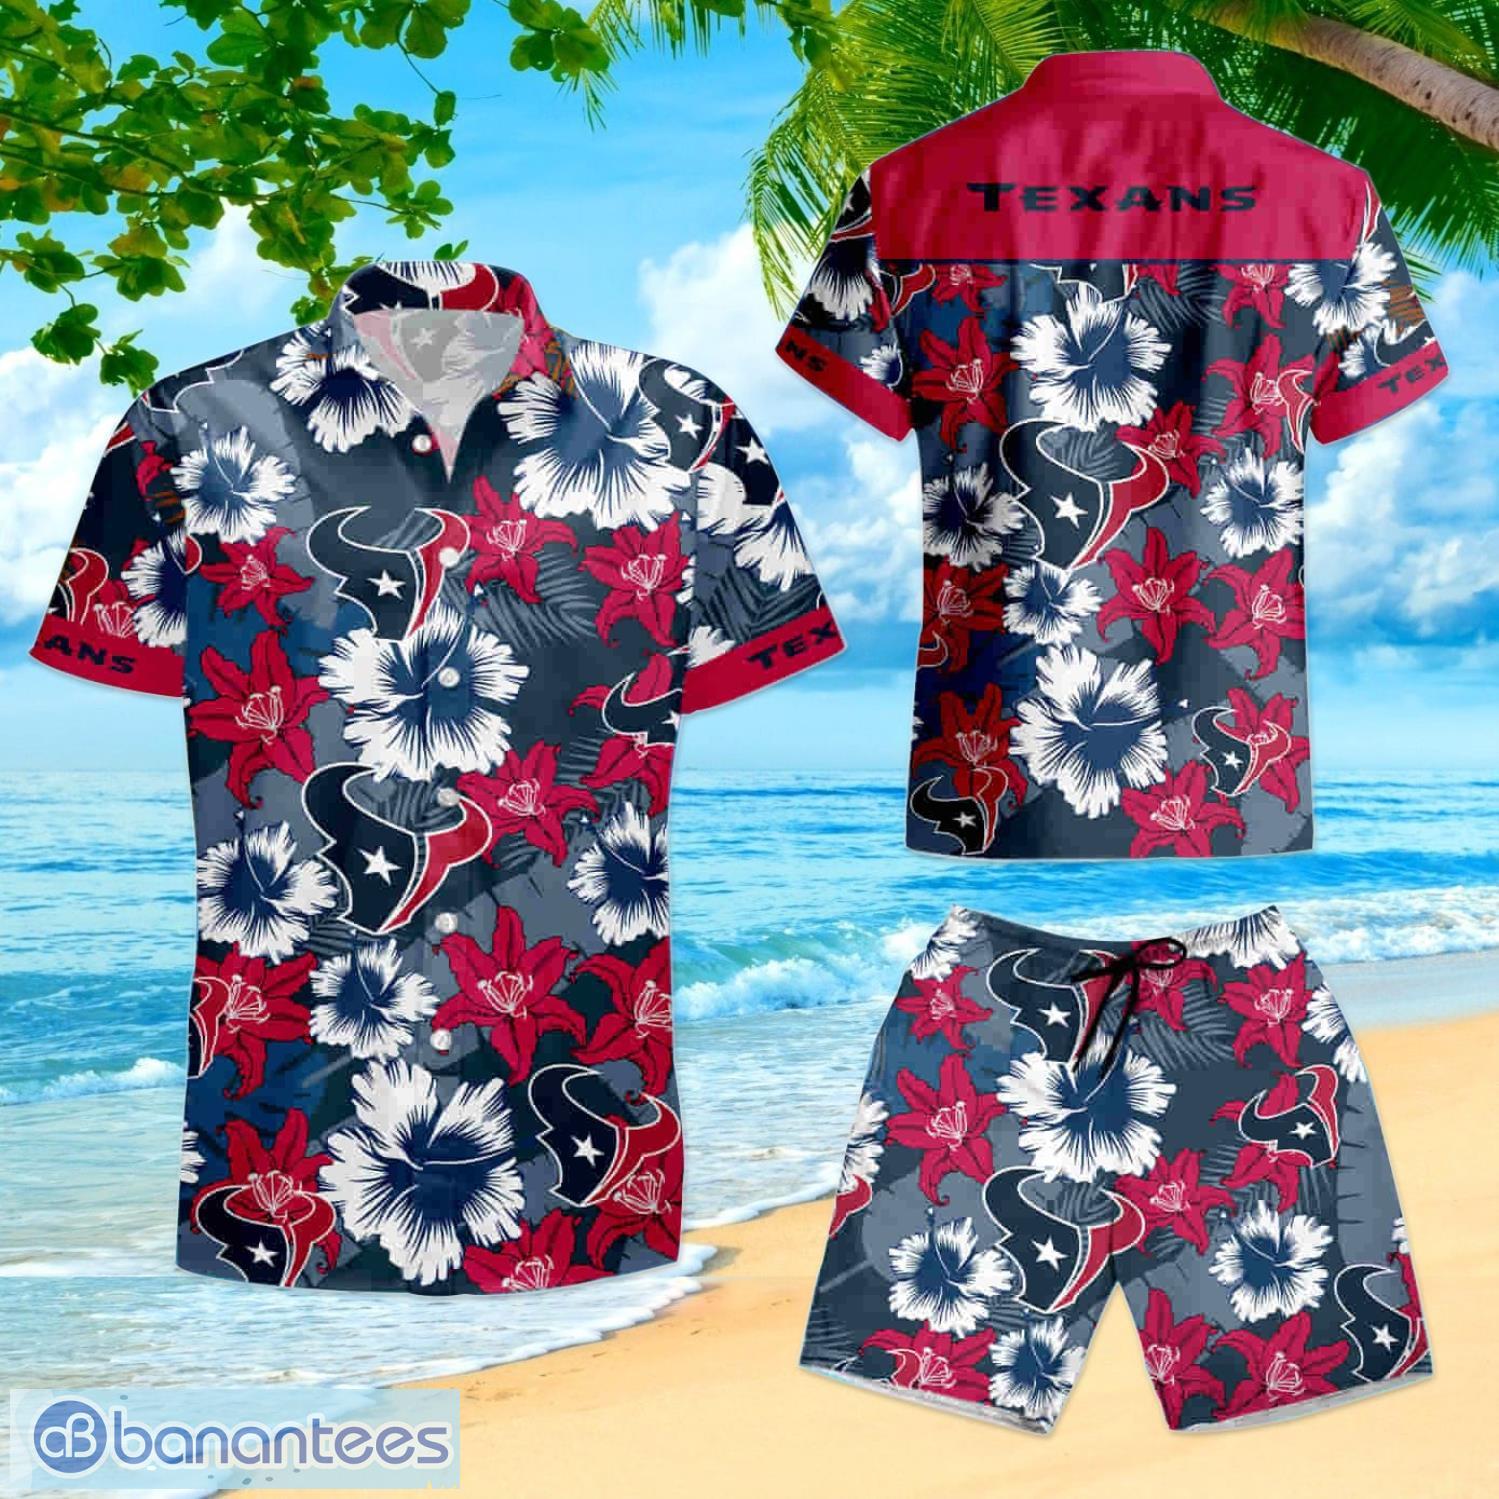 Houston Texans Logo Tropical Hawaiian Shirt And Shorts Summer Gift For Fans  - Banantees